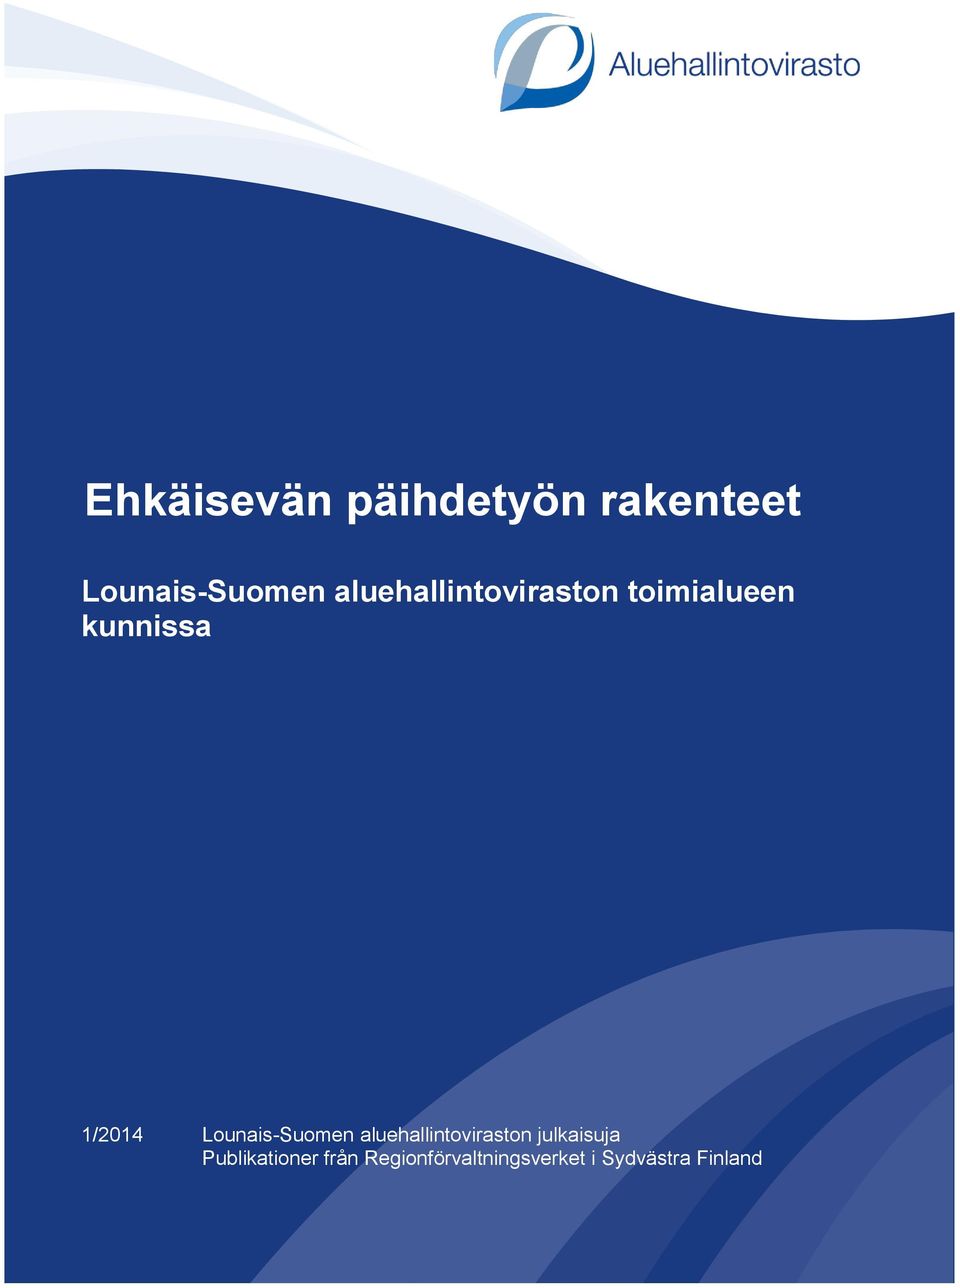 Lounais-Suomen aluehallintoviraston julkaisuja